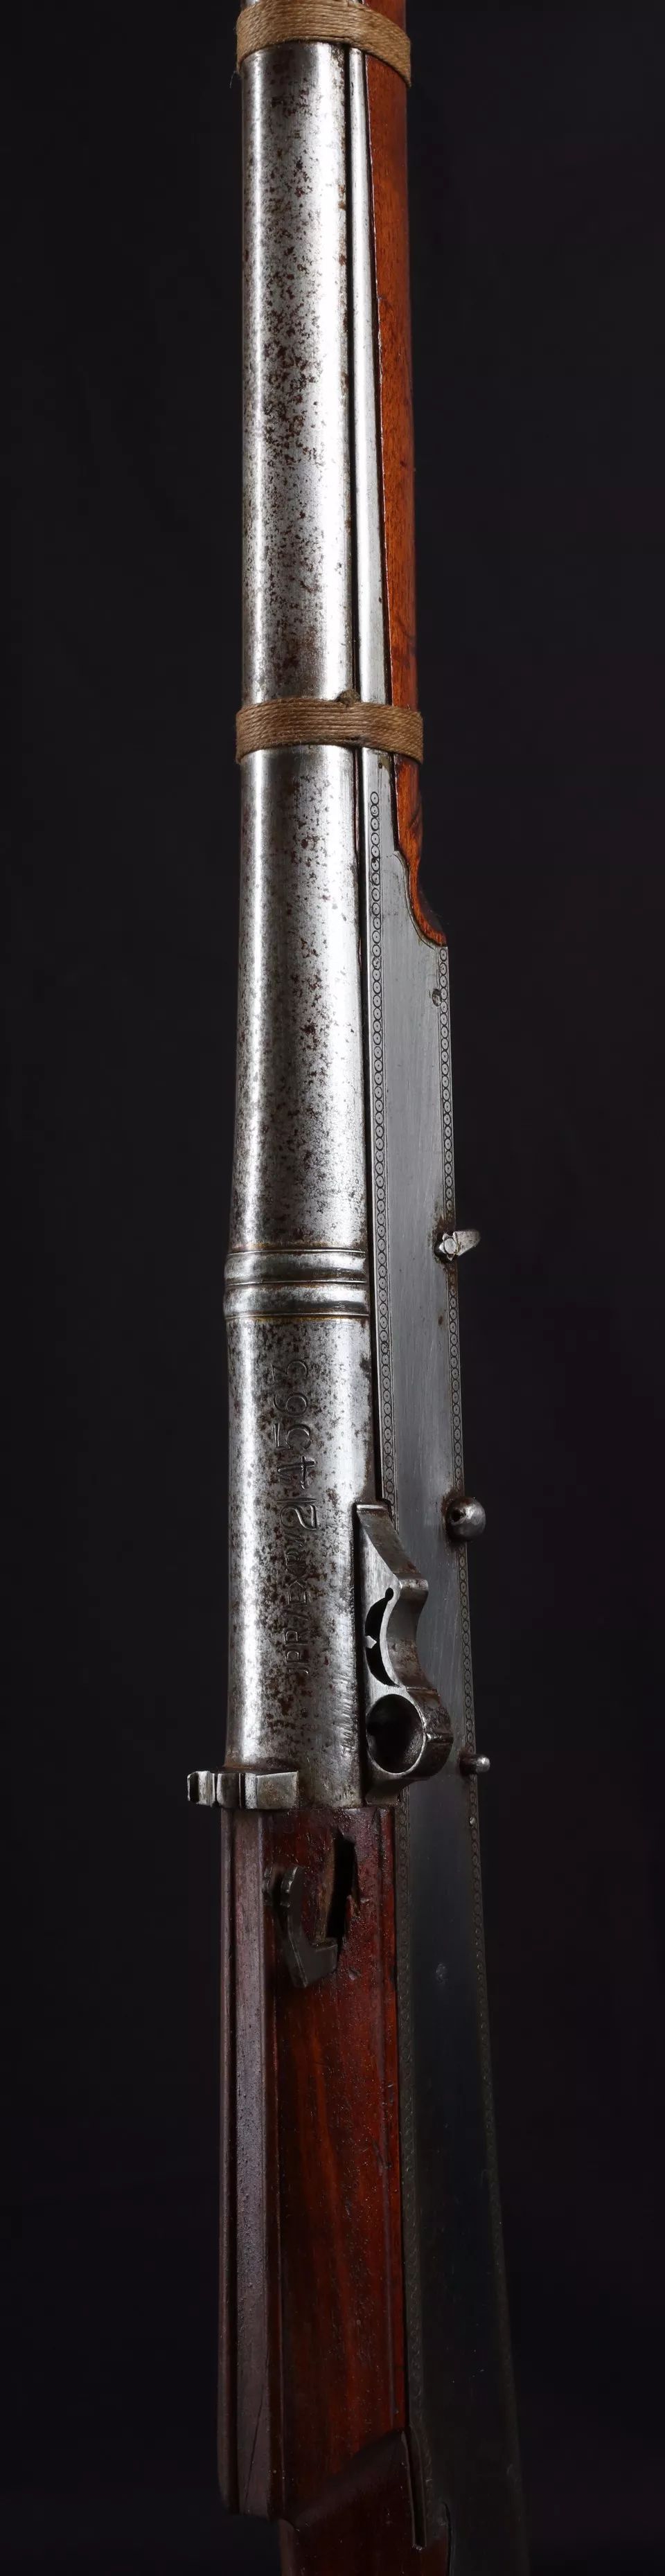 独一无二印度特色的经典火绳枪每一把都是艺术品级别的存在